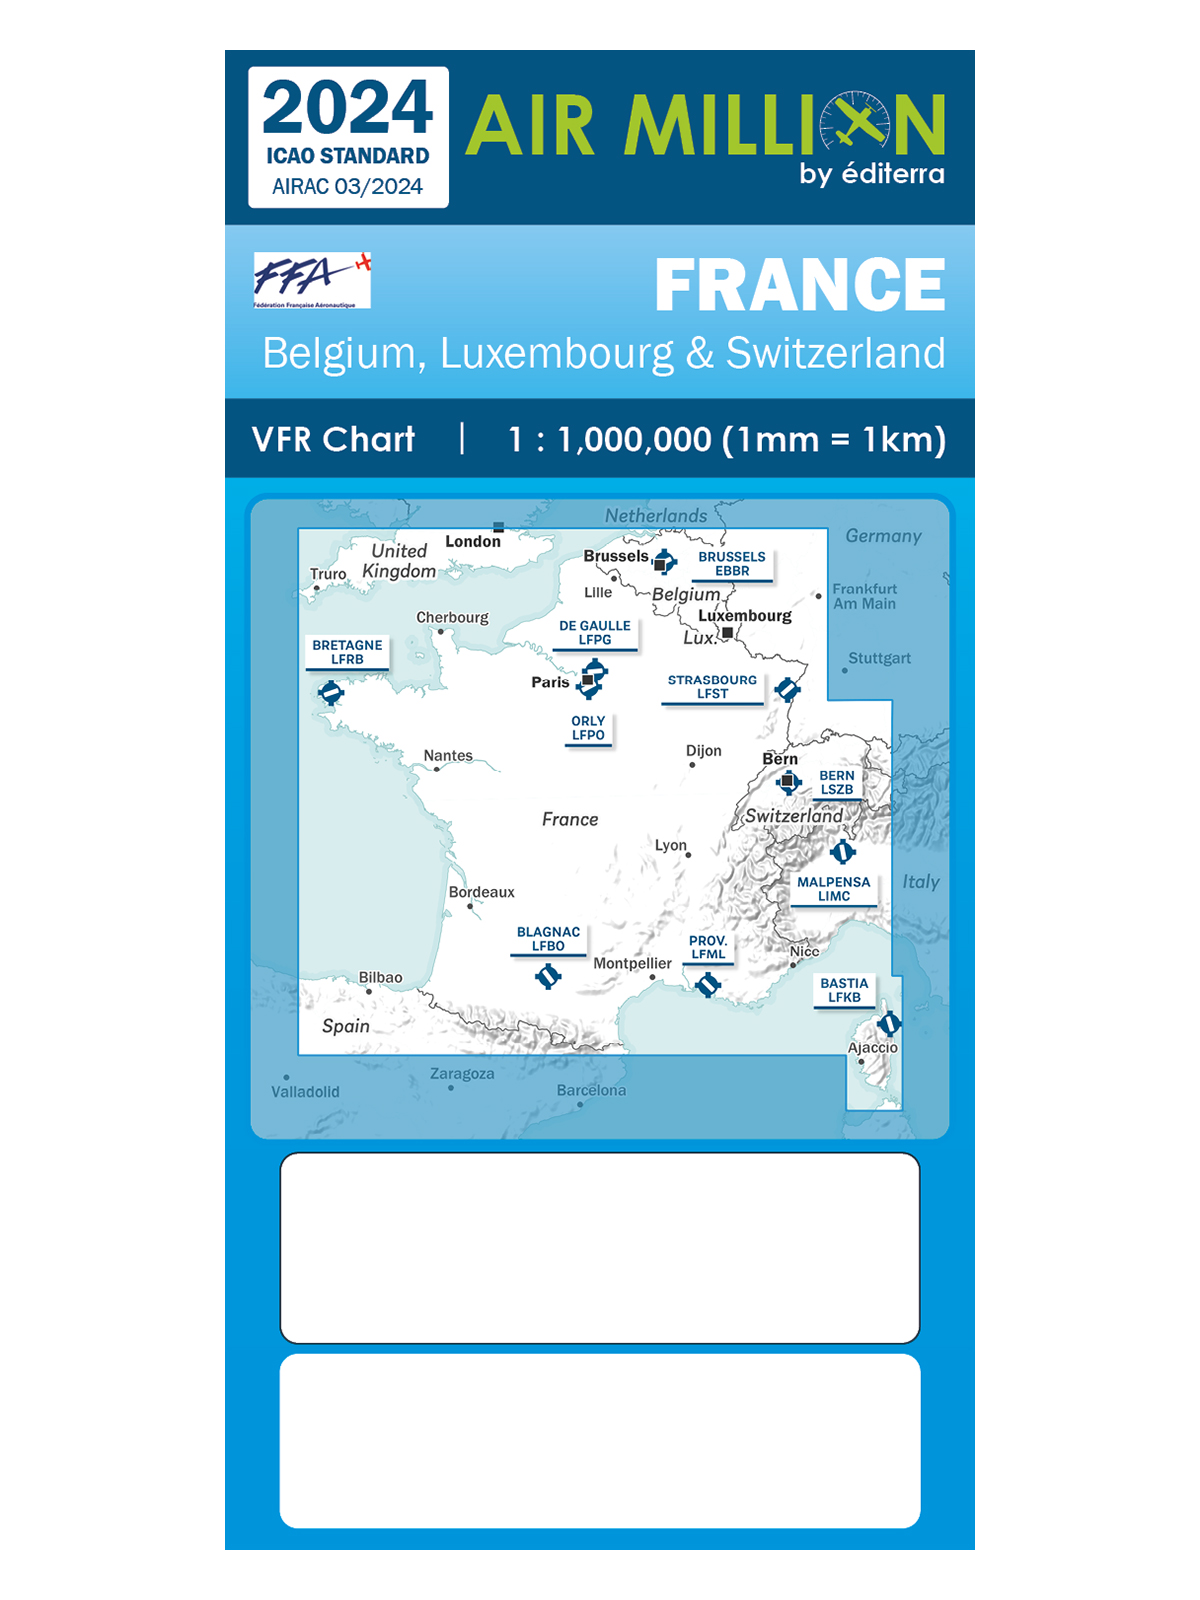 Frankreich - Air Million VFR-Karte 1:1.000.000, inkl. Nachbarländer, gefaltet, 2024